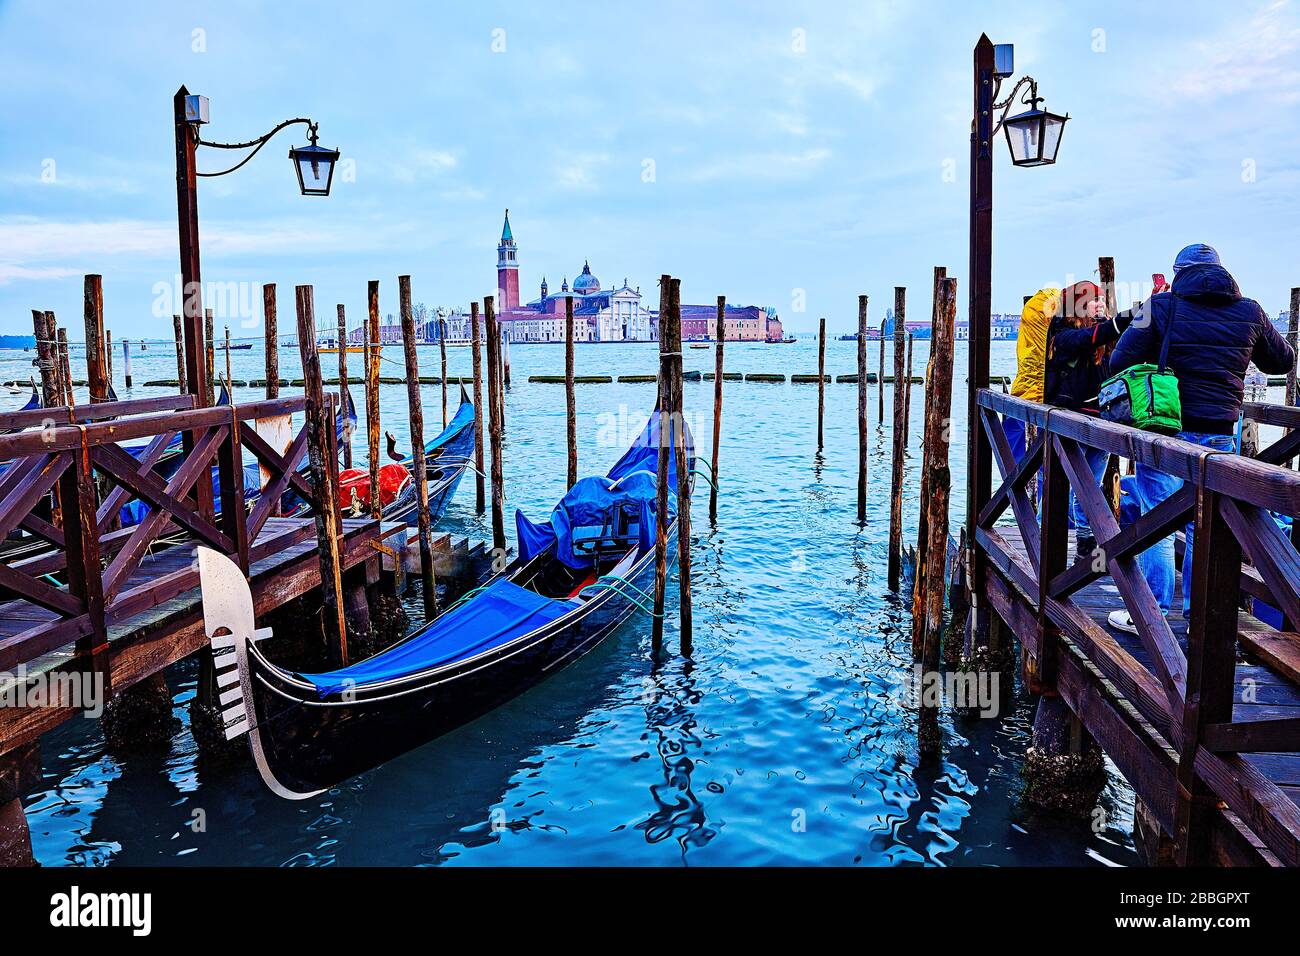 Backpackers, Venedig, die Hauptstadt der norditalienischen Region Venetien, liegt auf 118 kleinen Inseln in einer Lagune in der Adria. Es hat keine Straßen, juj Stockfoto